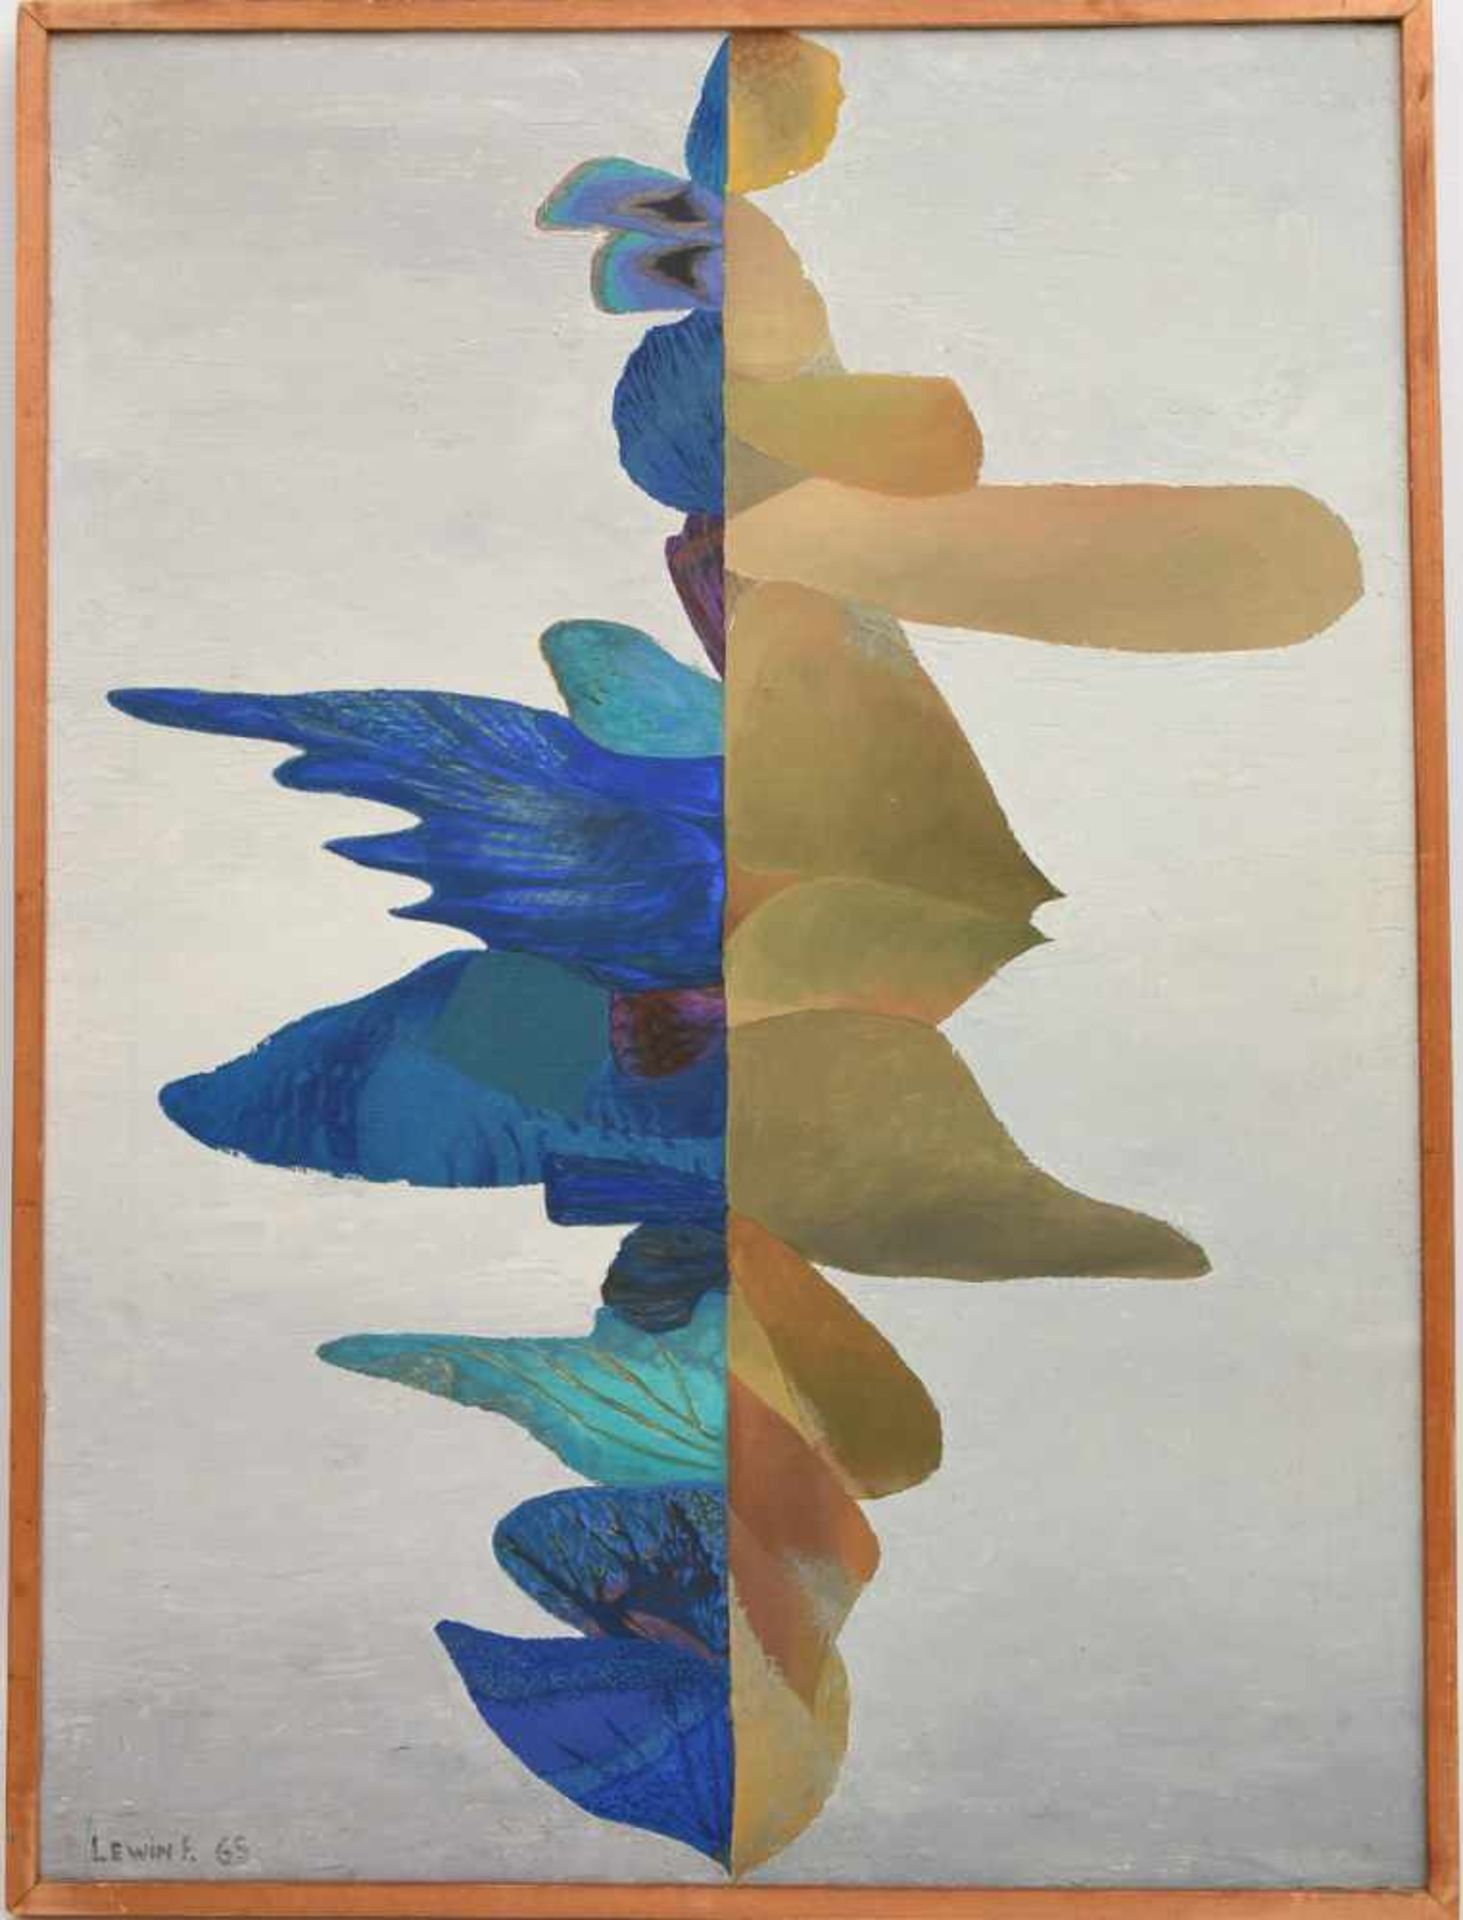 FELIX LEWIN, "Abstrakte Komposition in grau und blau" Öl auf Leinwand, 1965, gerahmt. Unten links